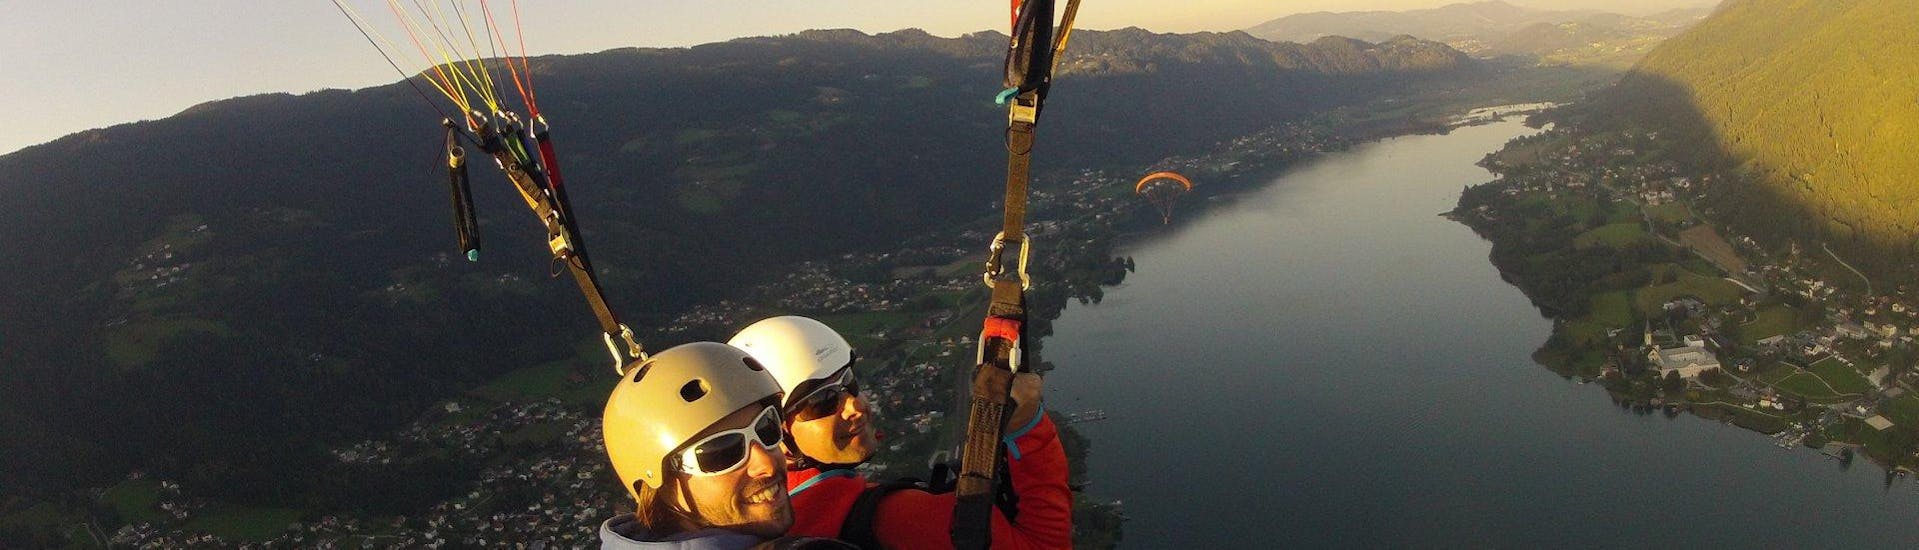 Paragliden boven het meer tijdens zonsondergang tijdens tandem paragliden vanaf Gerlitzen in de avond met Adventure-Wings Ossiachersee